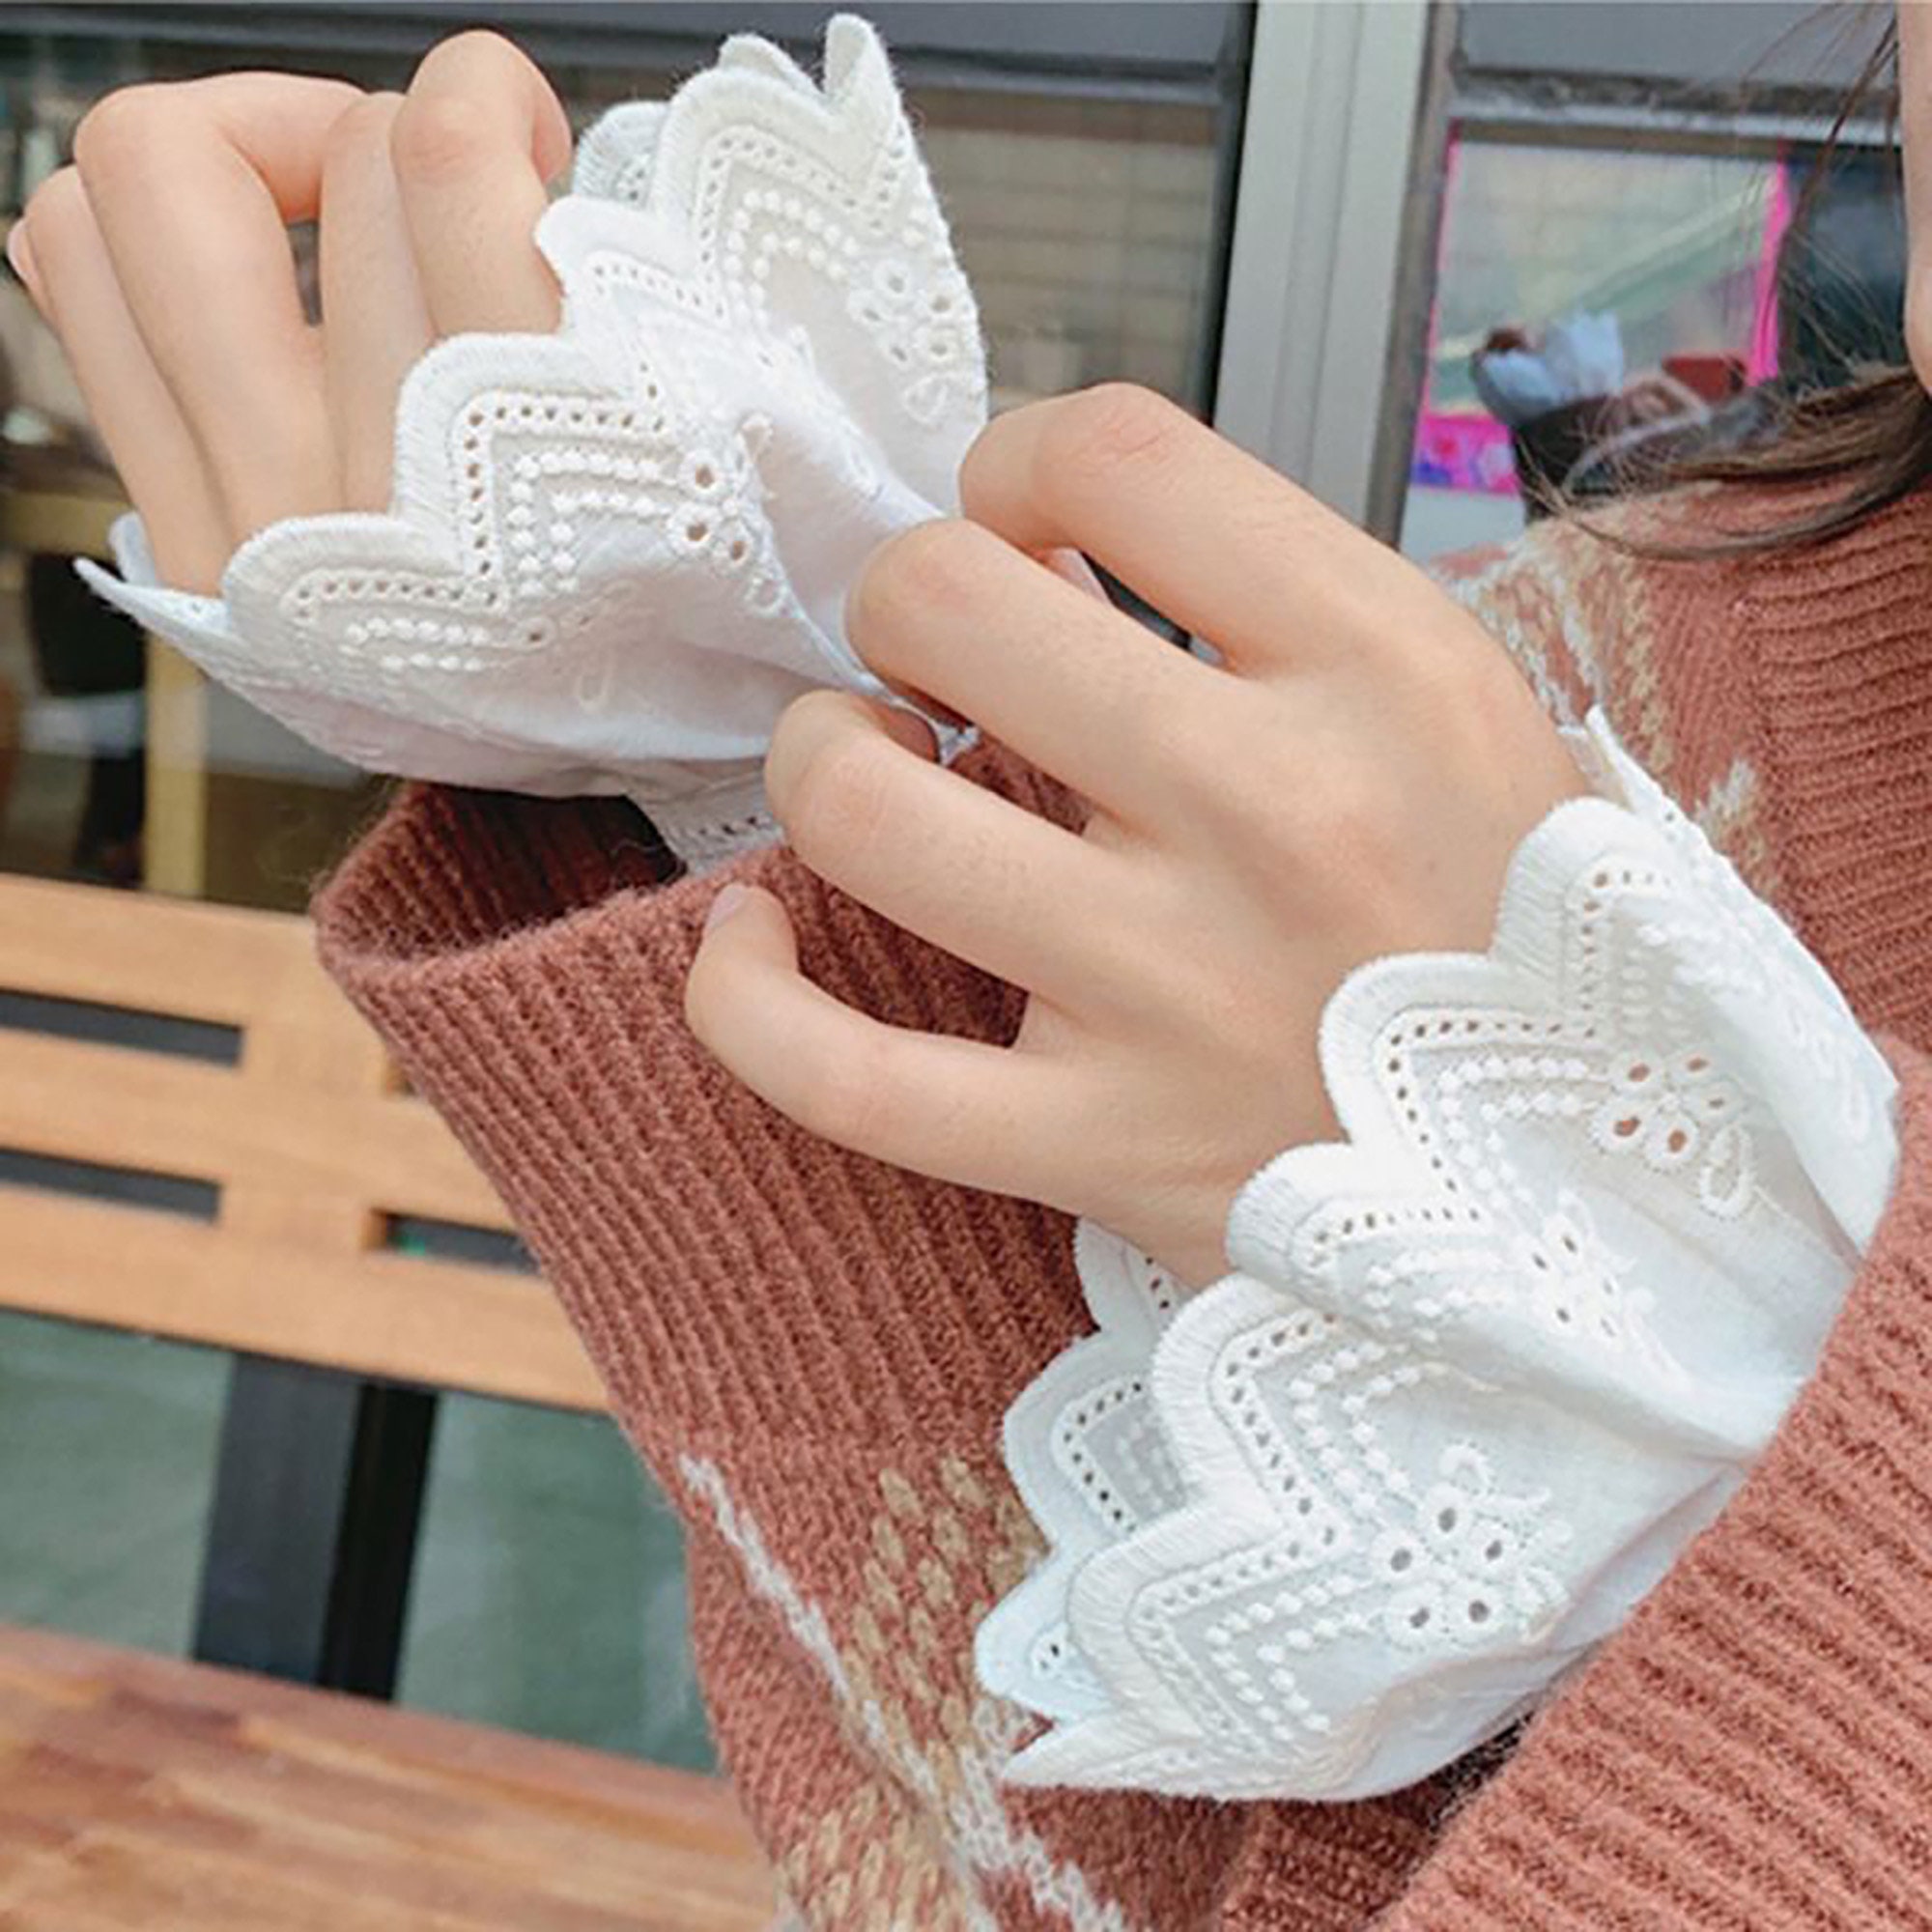 Women Lace Wrist Cuffs Knitted Horn Cuffs Detachable Short Long False Sleeve